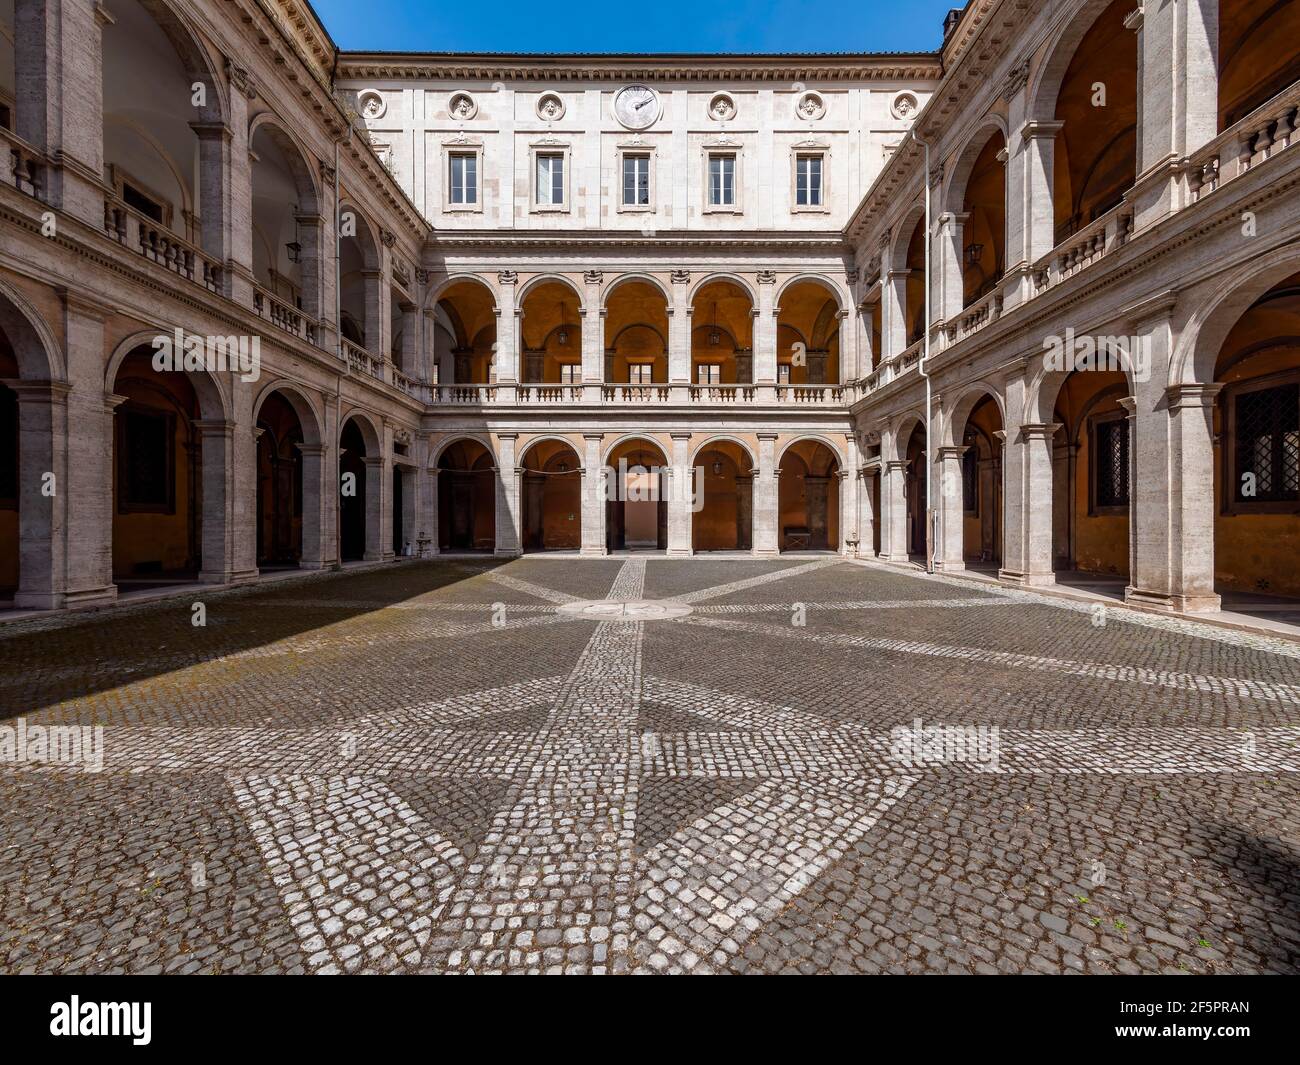 Renaissance Courtyard. El Chiostro del Bramante, uno de los puntos más altos de la arquitectura renacentista en Roma, fue diseñado por Donato Bramante. Foto de stock